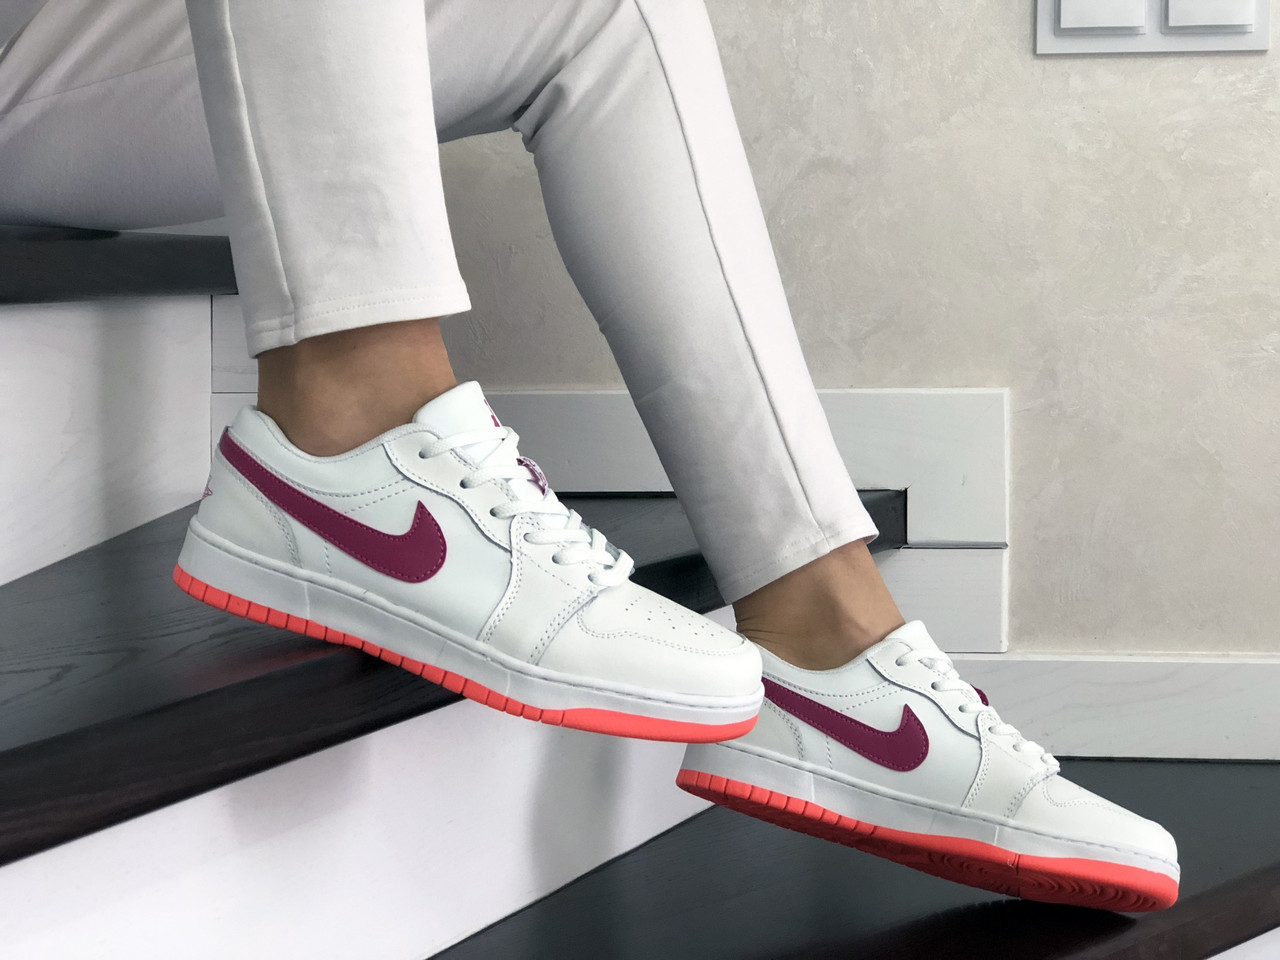 

Кроссовки женские Nike Air Jordan белые, Найк Джордан, натуральная кожа, прошиты, код SD-9163 37